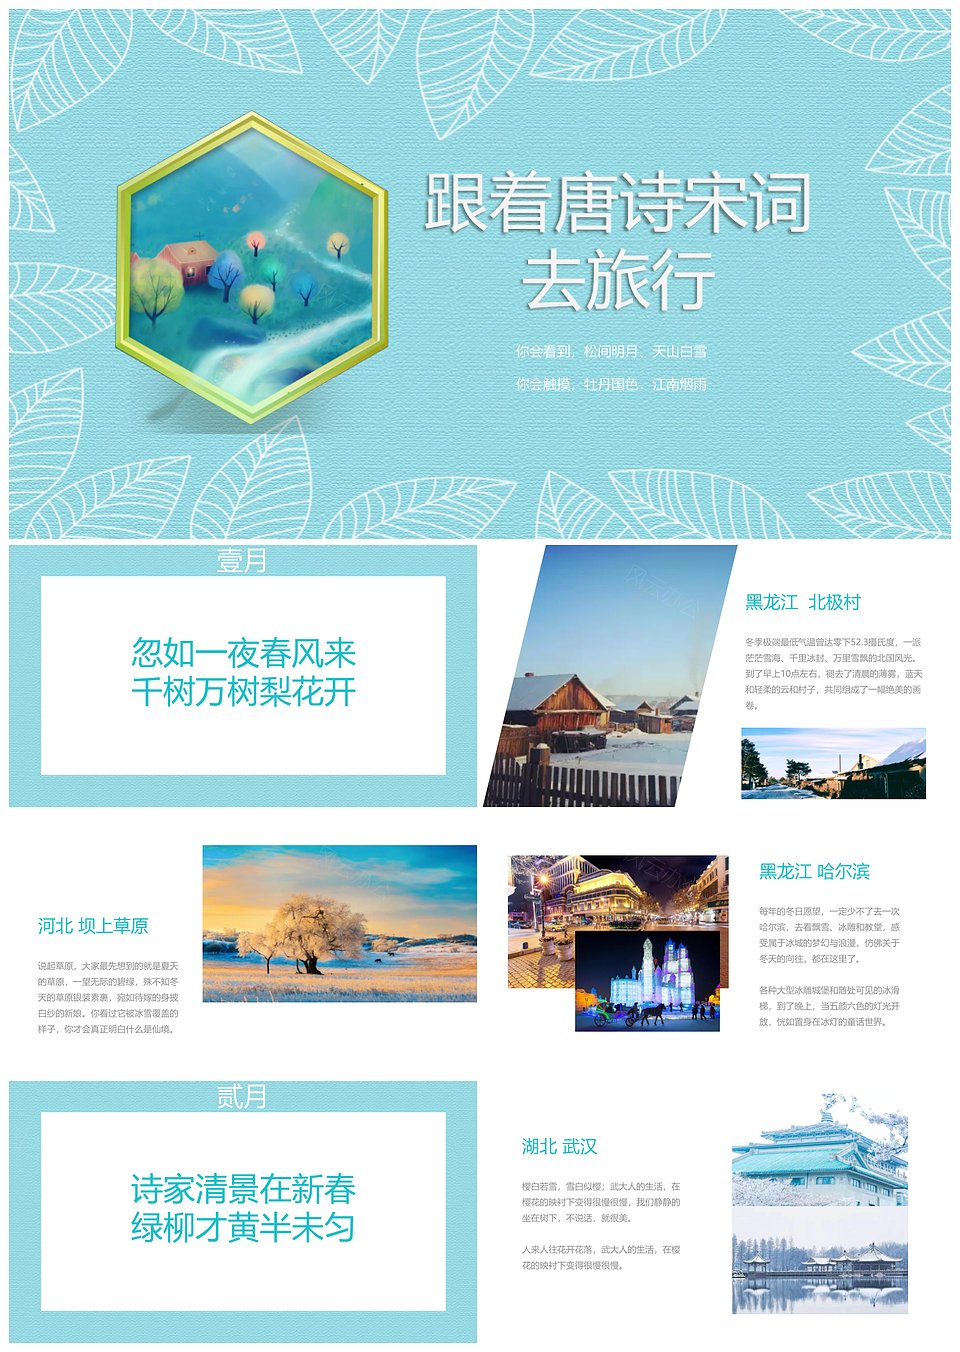 中国文化跟着诗意去旅行PPT模板模板下载,中国文化跟着诗意去旅行PPT模板,模板下载,第1张